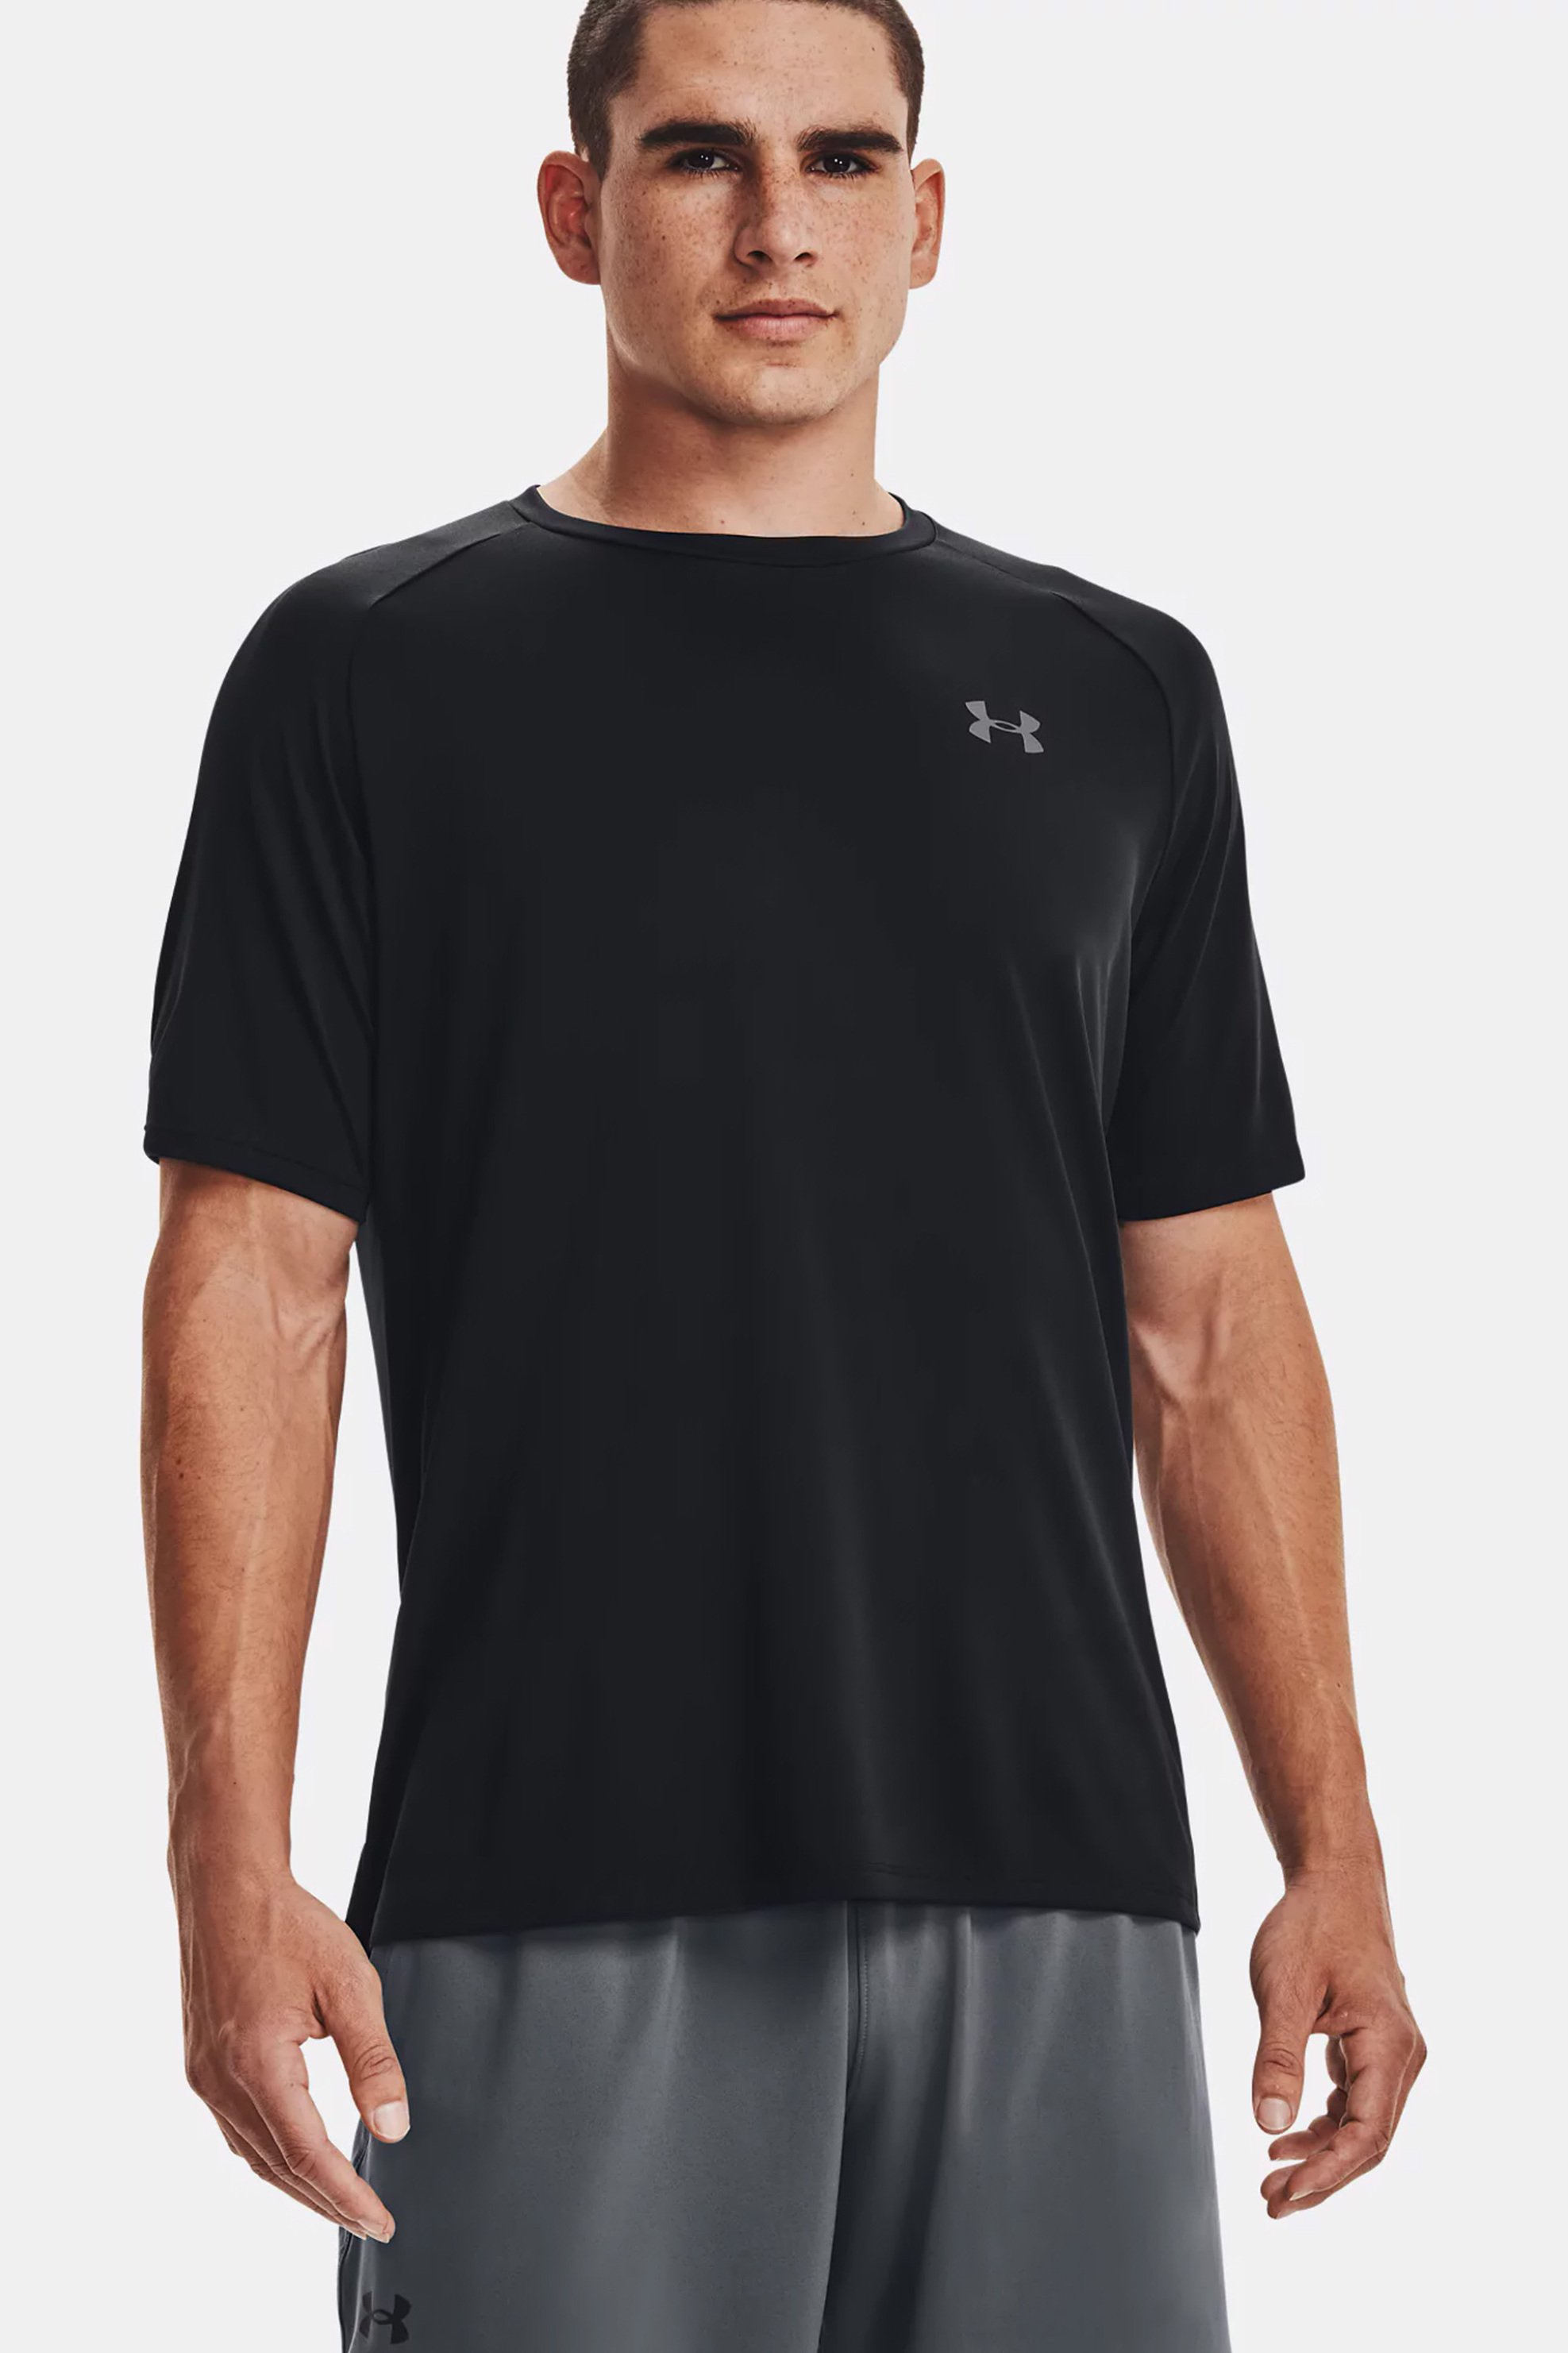 Άνδρας > ΡΟΥΧΑ > Μπλούζες > T-Shirts Under Armour ανδρικό T-shirt με logo print "UA Tech™ 2.0" - 1326413 Μαύρο